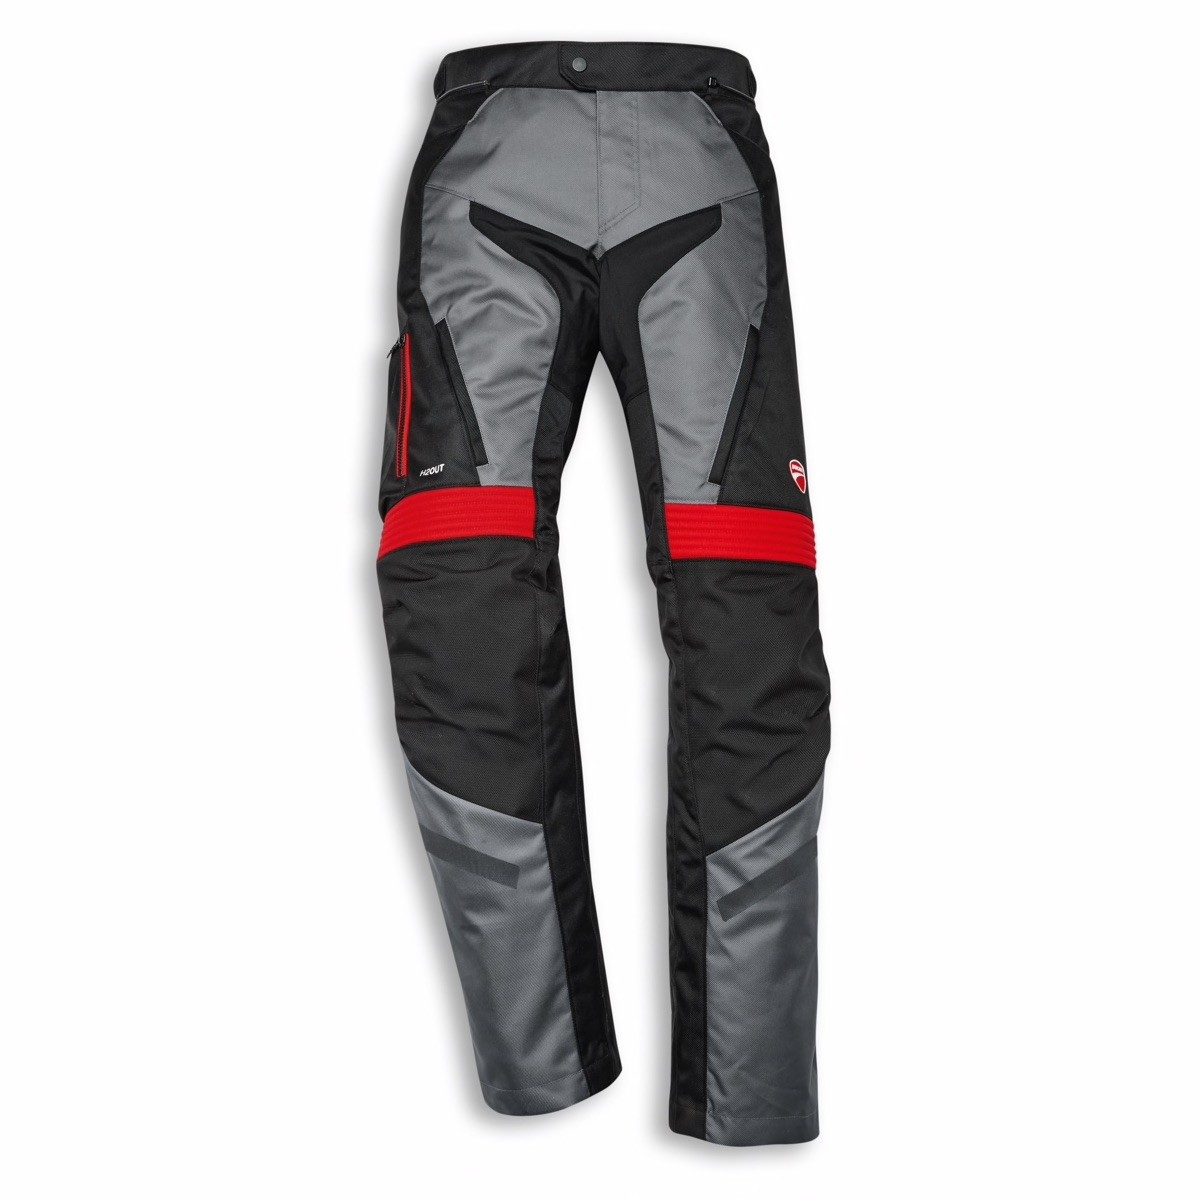 Atacama C2 - Fabric trousers